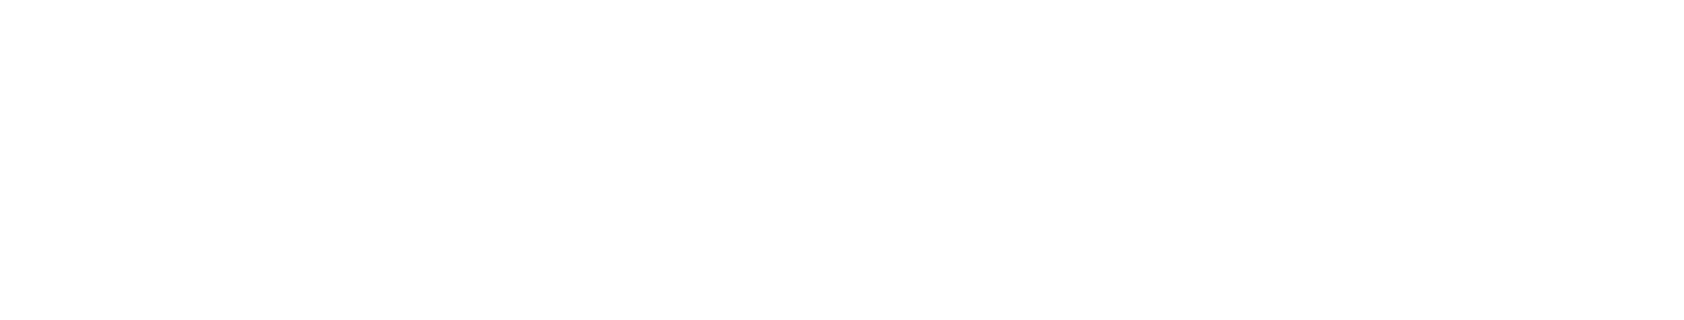 UCI Big Ideas Challenge